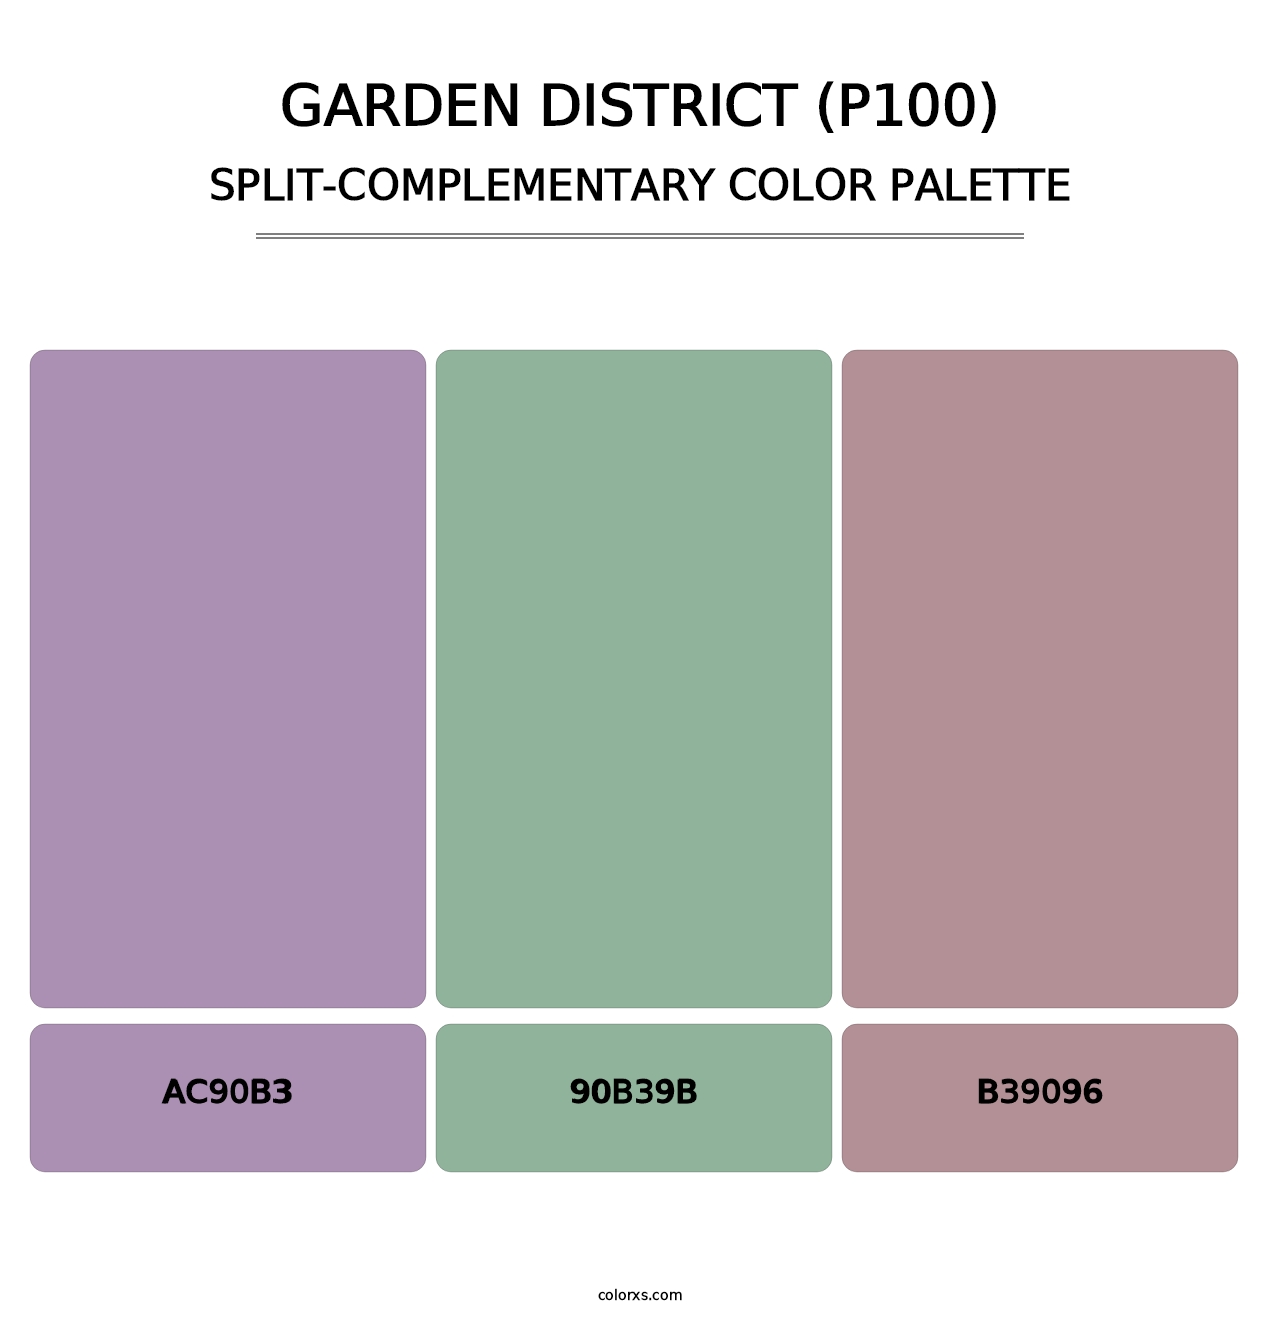 Garden District (P100) - Split-Complementary Color Palette